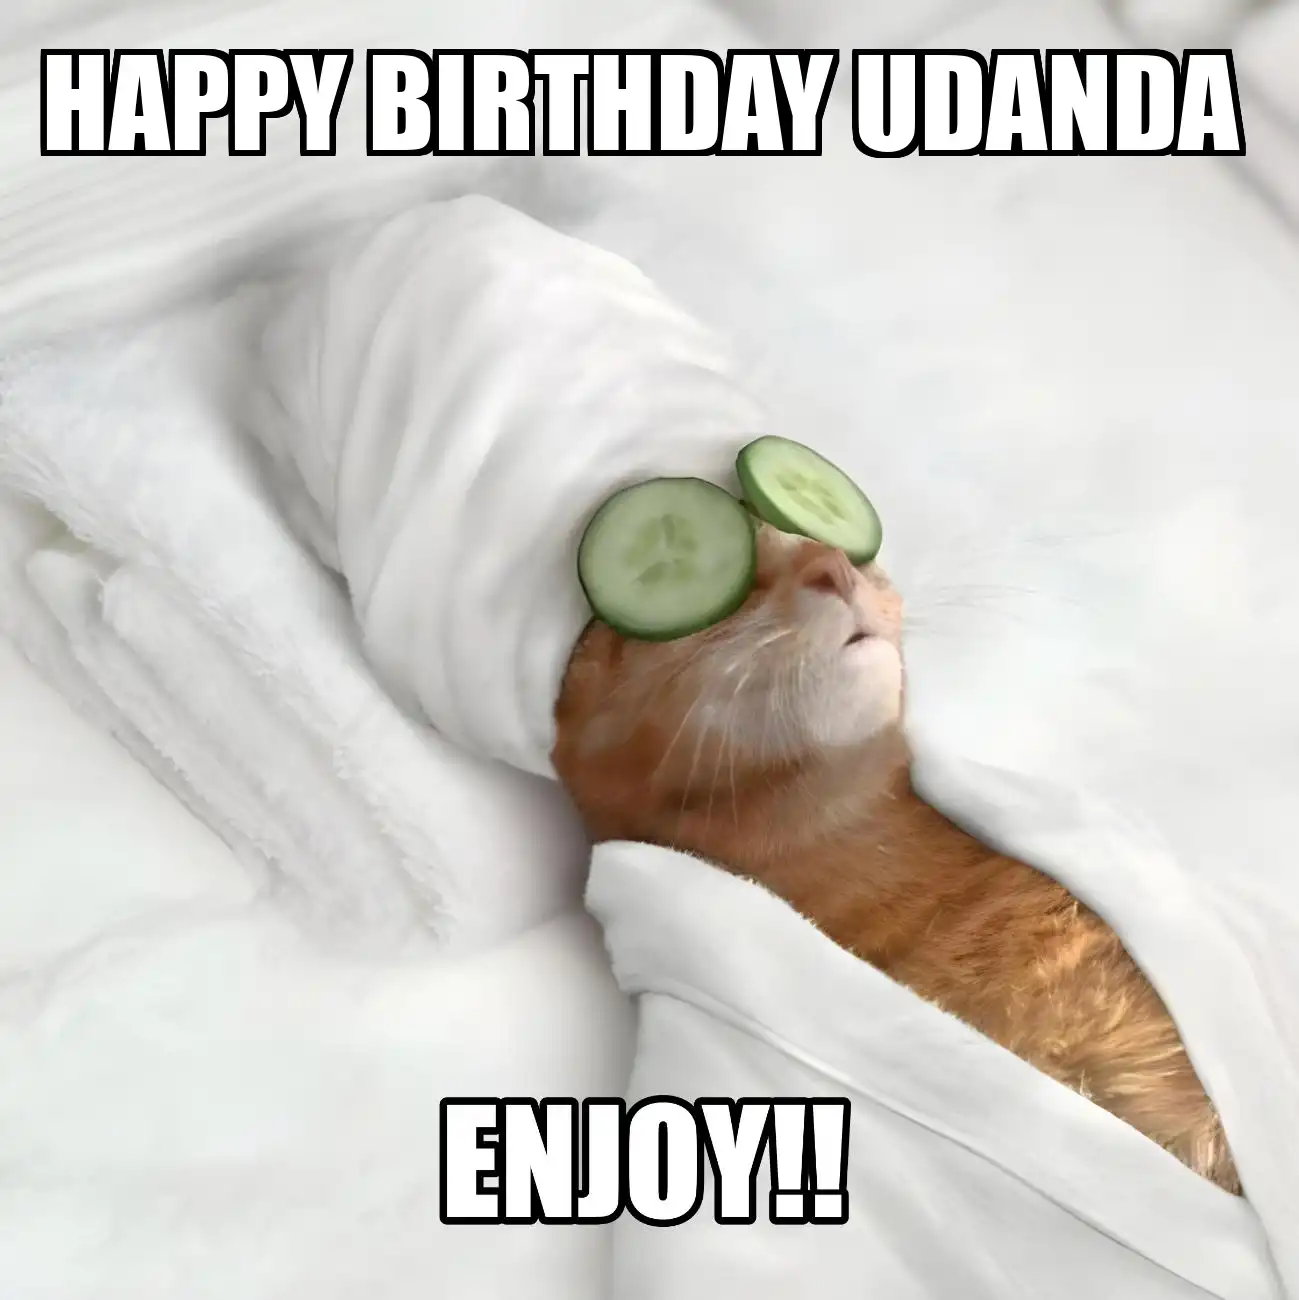 Happy Birthday Udanda Enjoy Cat Meme